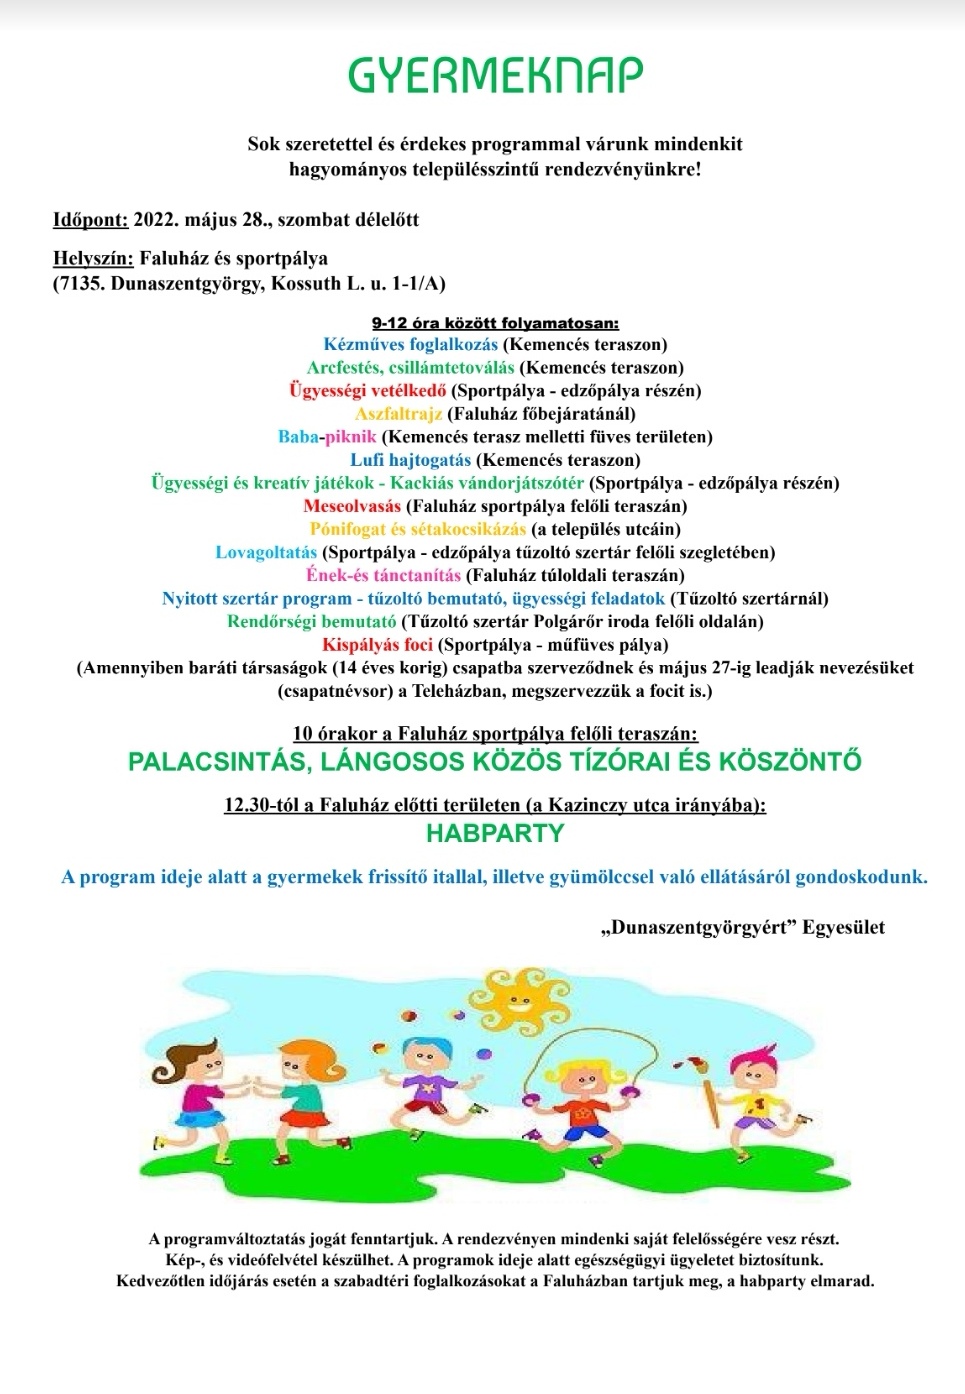 Gyermeknap_2022_Dunaszentgyörgy_plakát